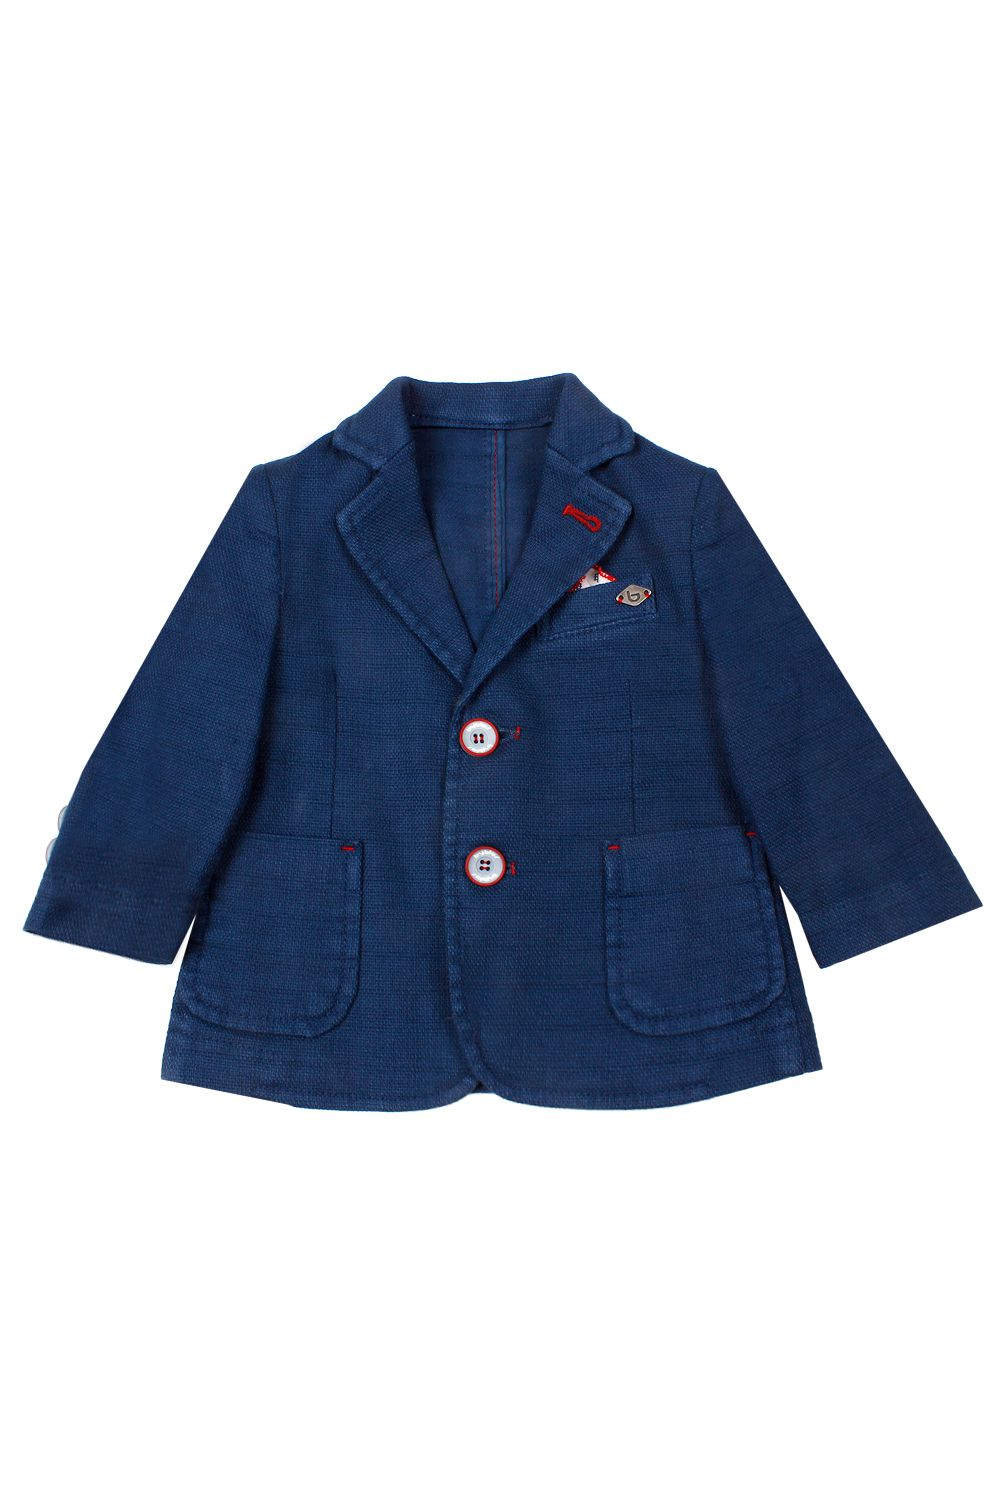 Пиджак Byblos, размер 80, цвет синий - фото 1